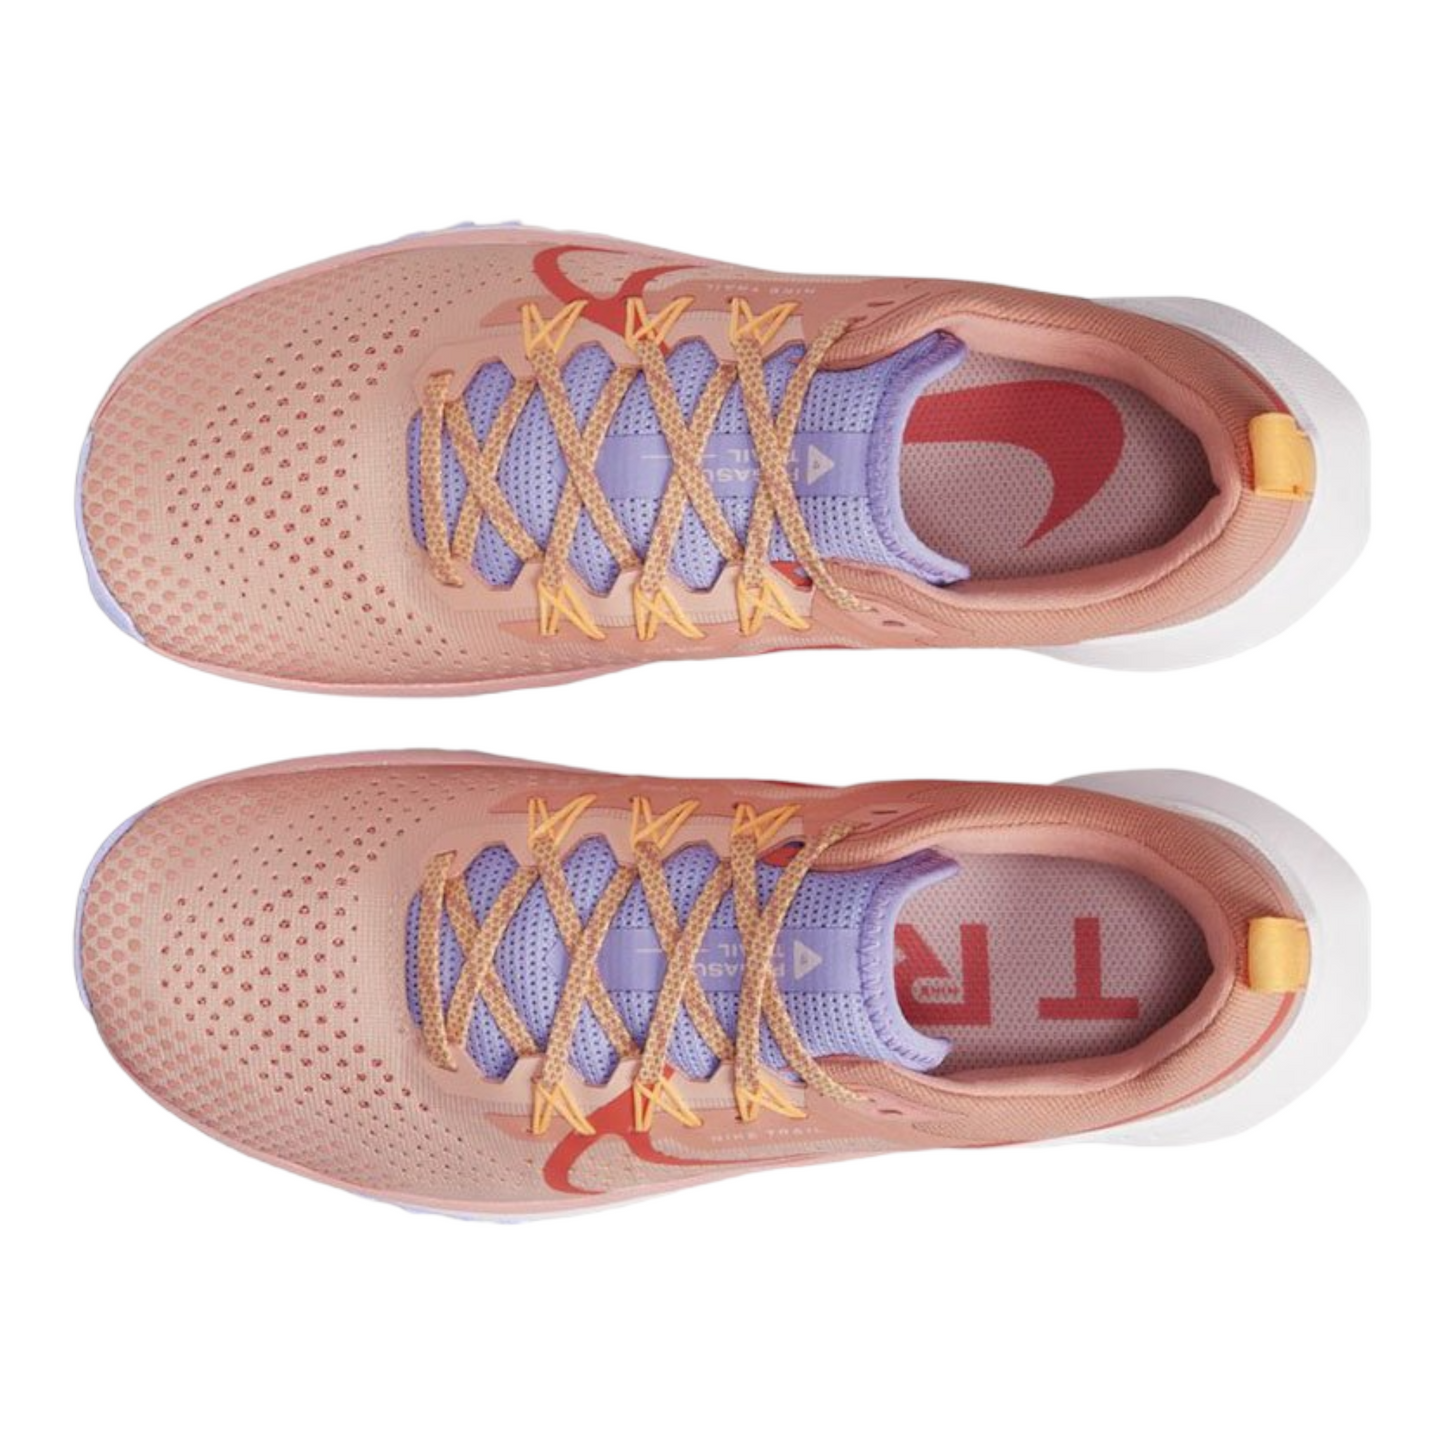 Nike Wmns React Pegasus Trail SE DJ6159-800 pink orange